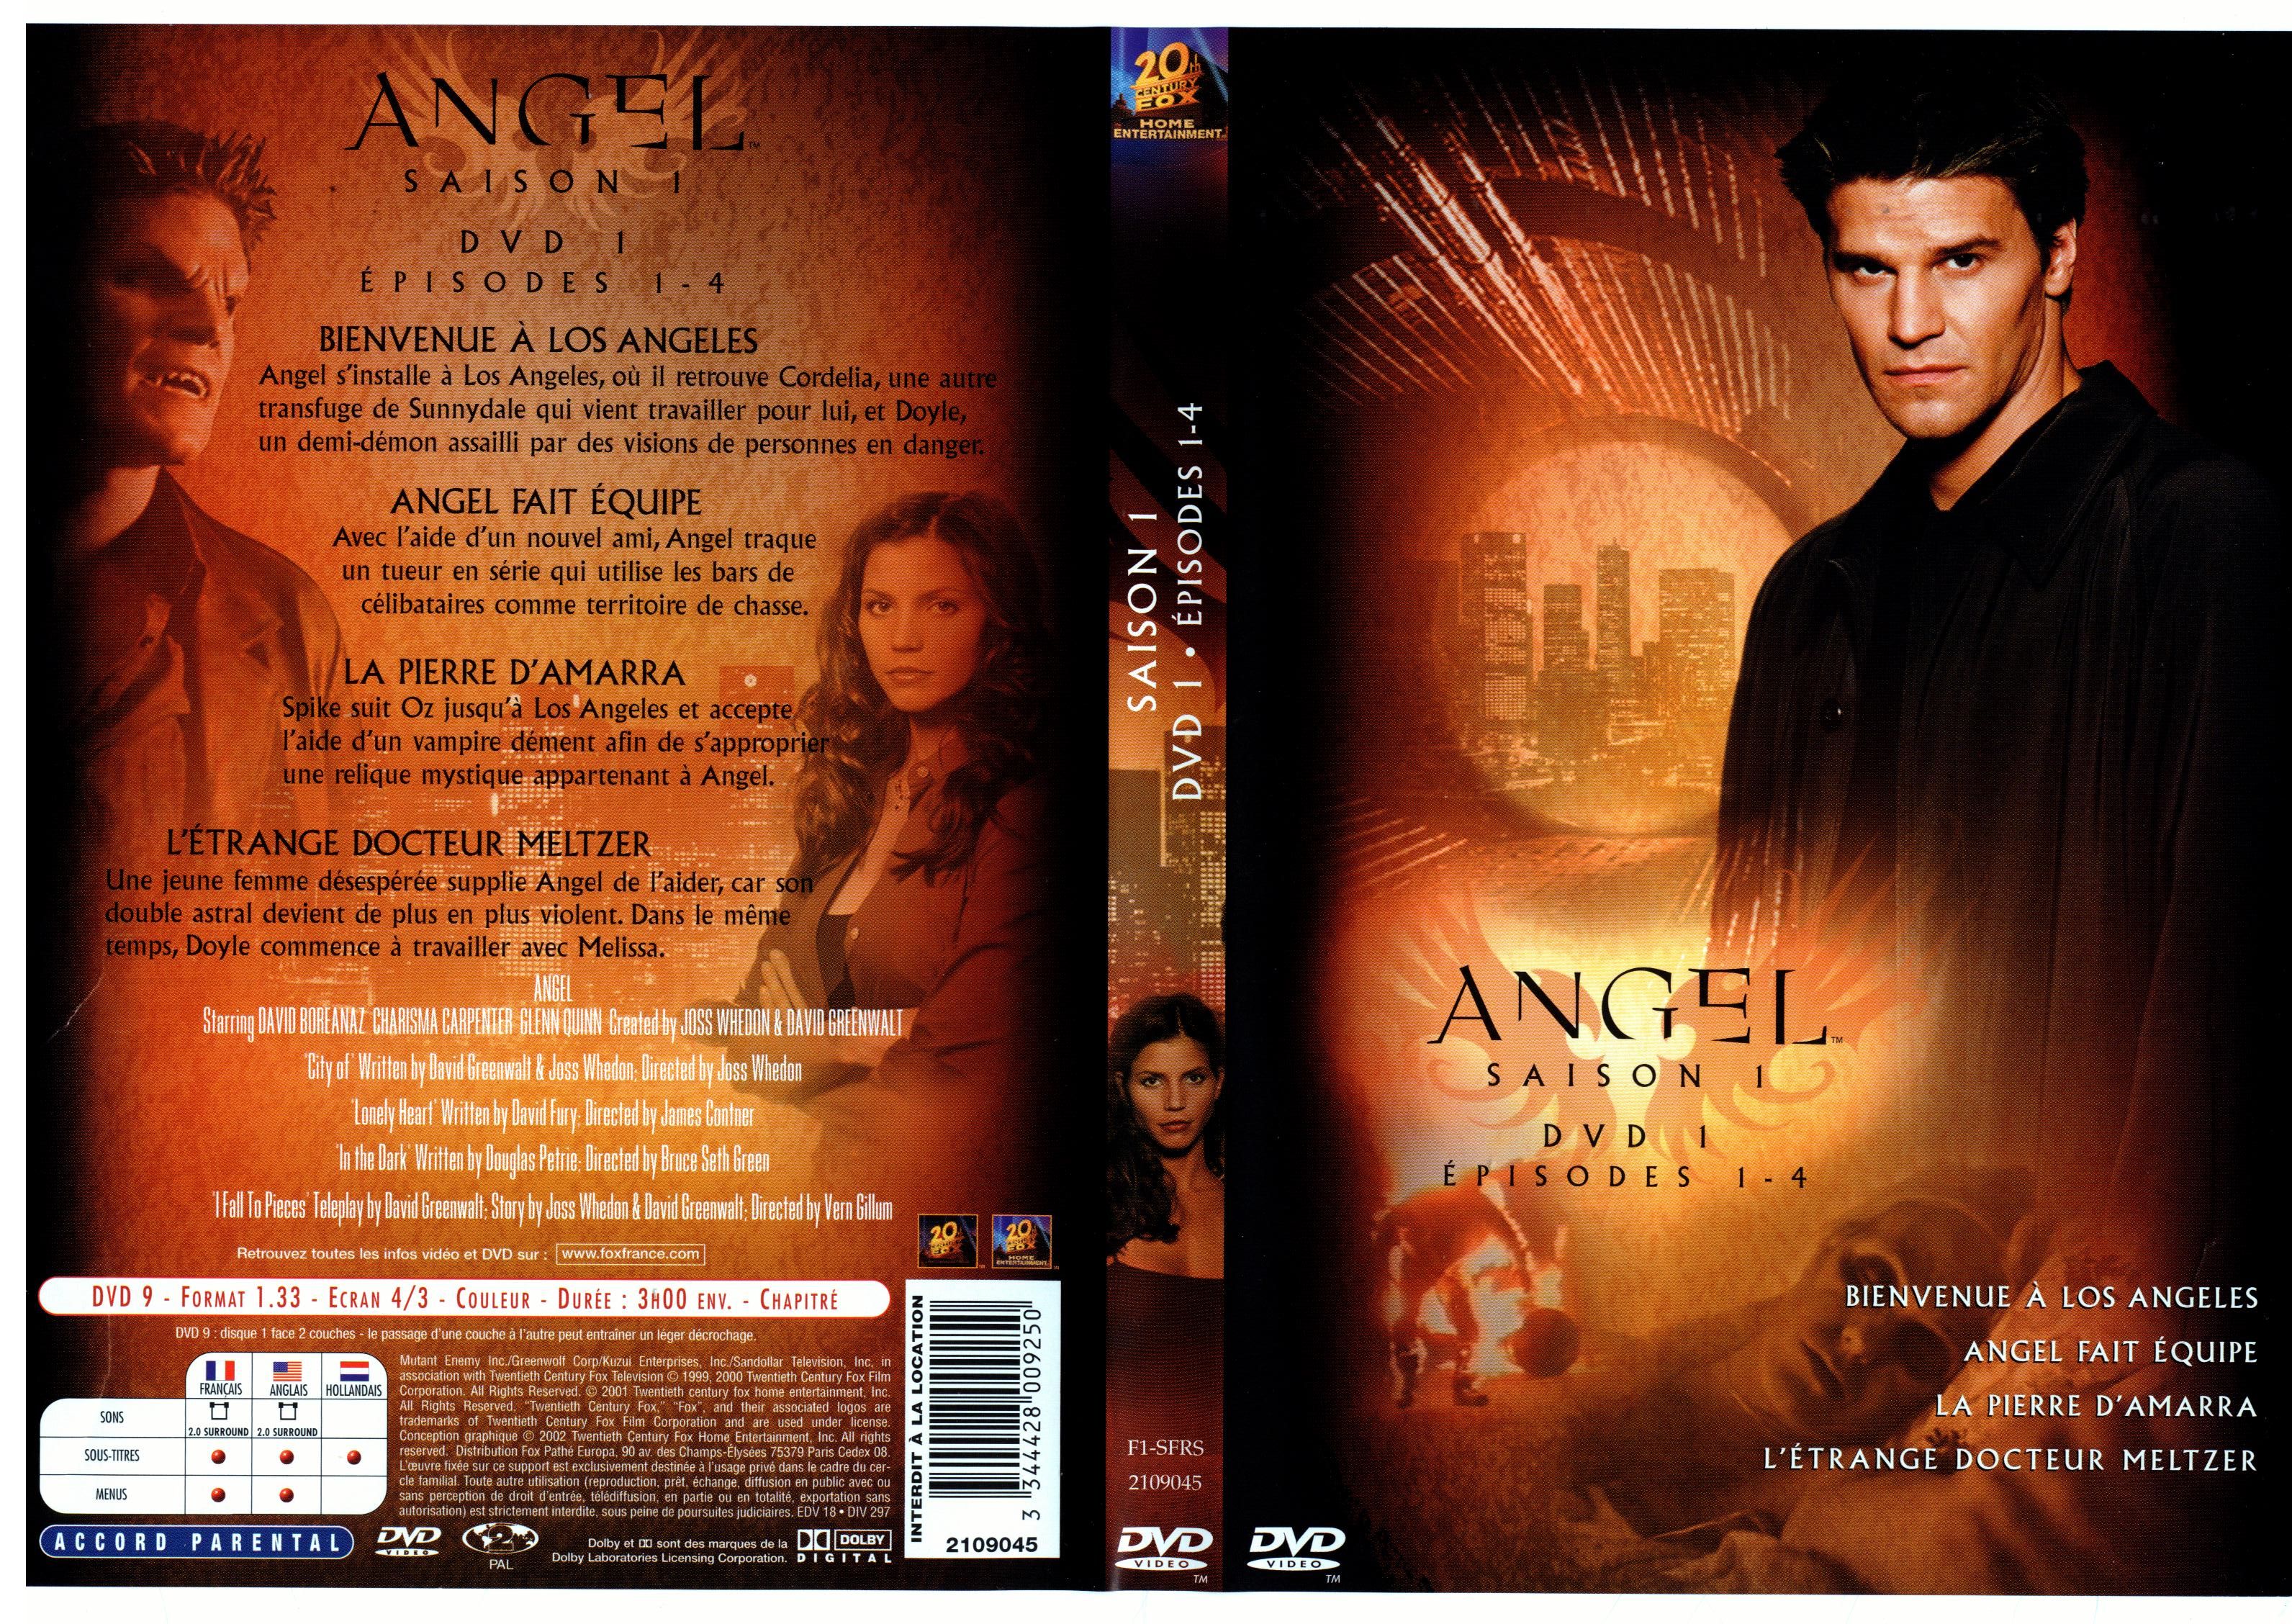 Jaquette DVD Angel Saison 1 dvd 1